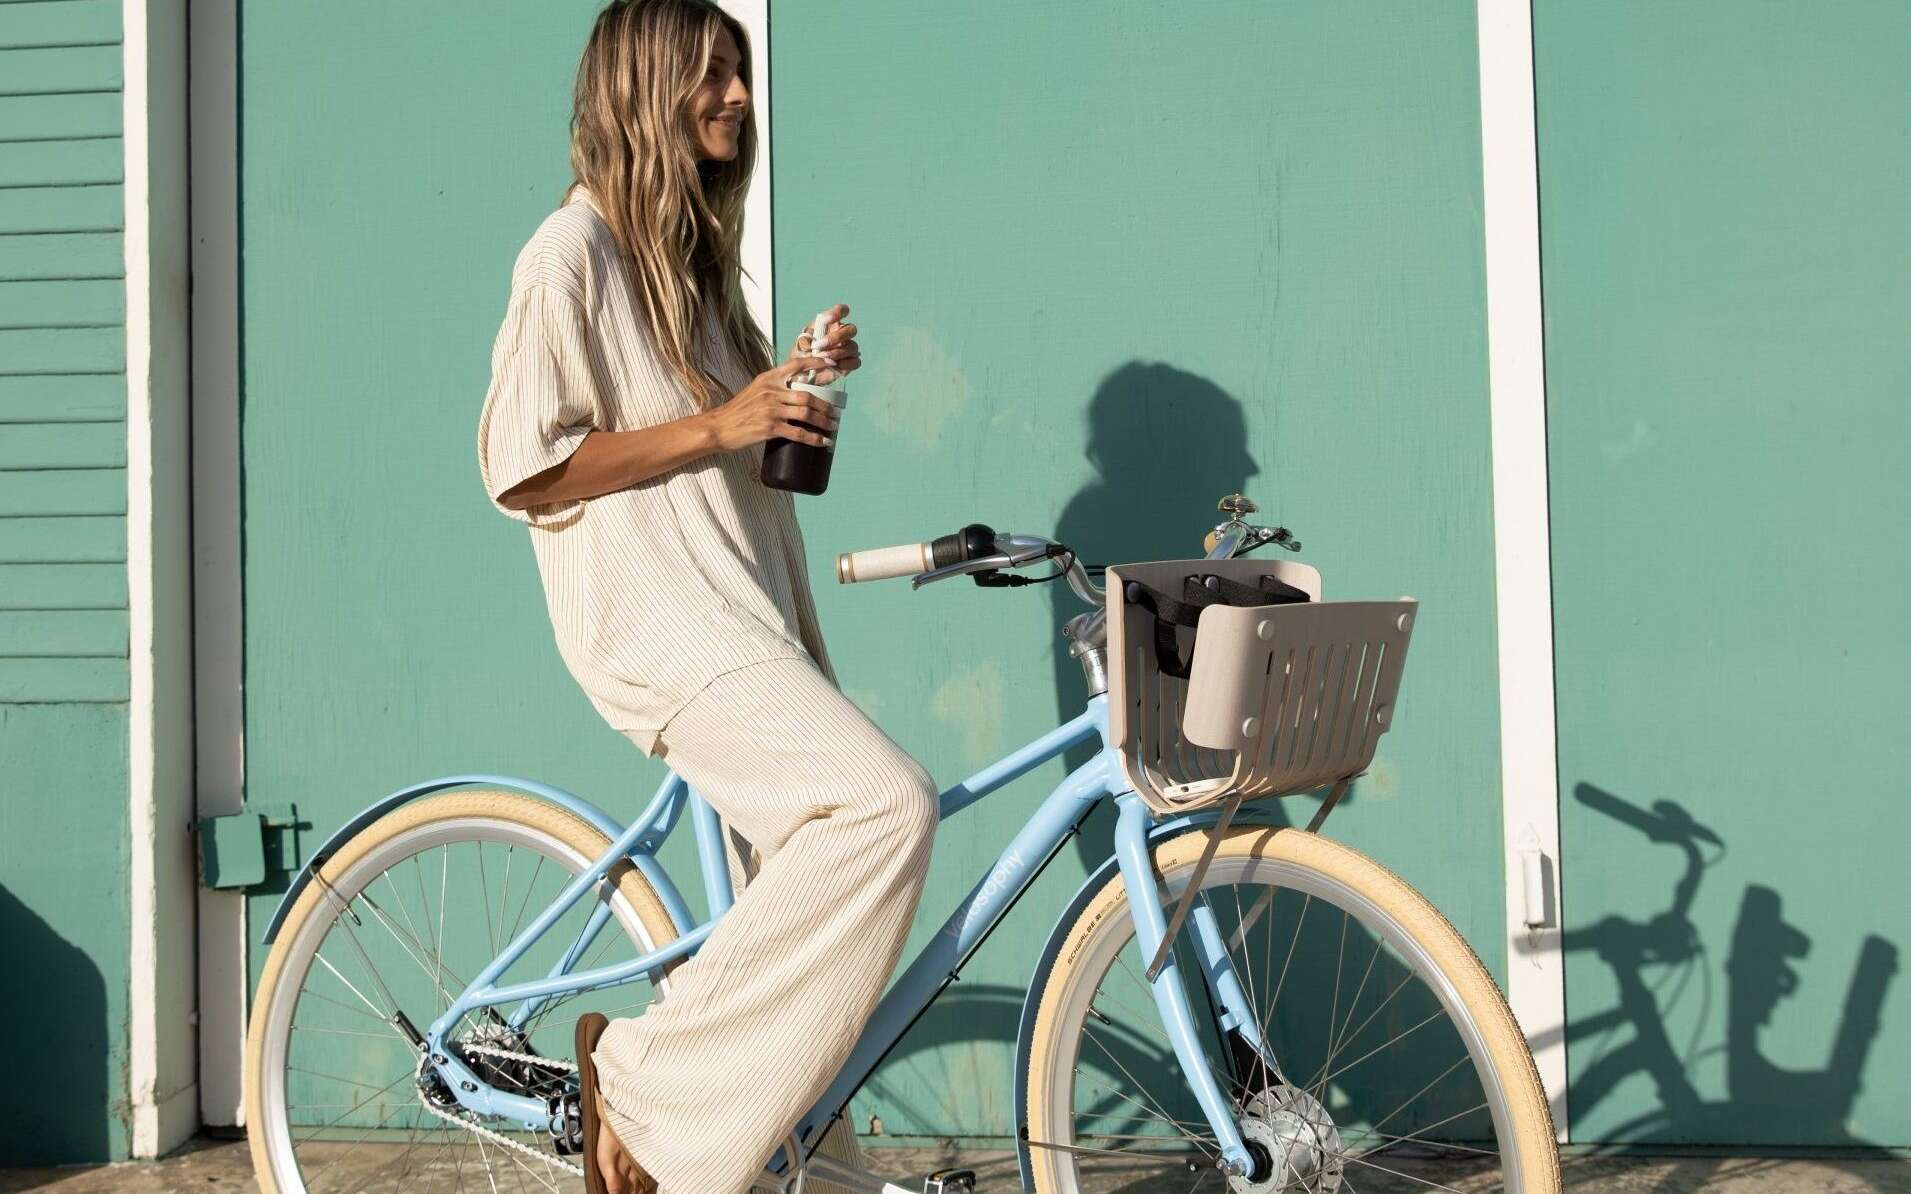 Recyclage chic avec ce vélo suédois qui marie éthique et esthétique